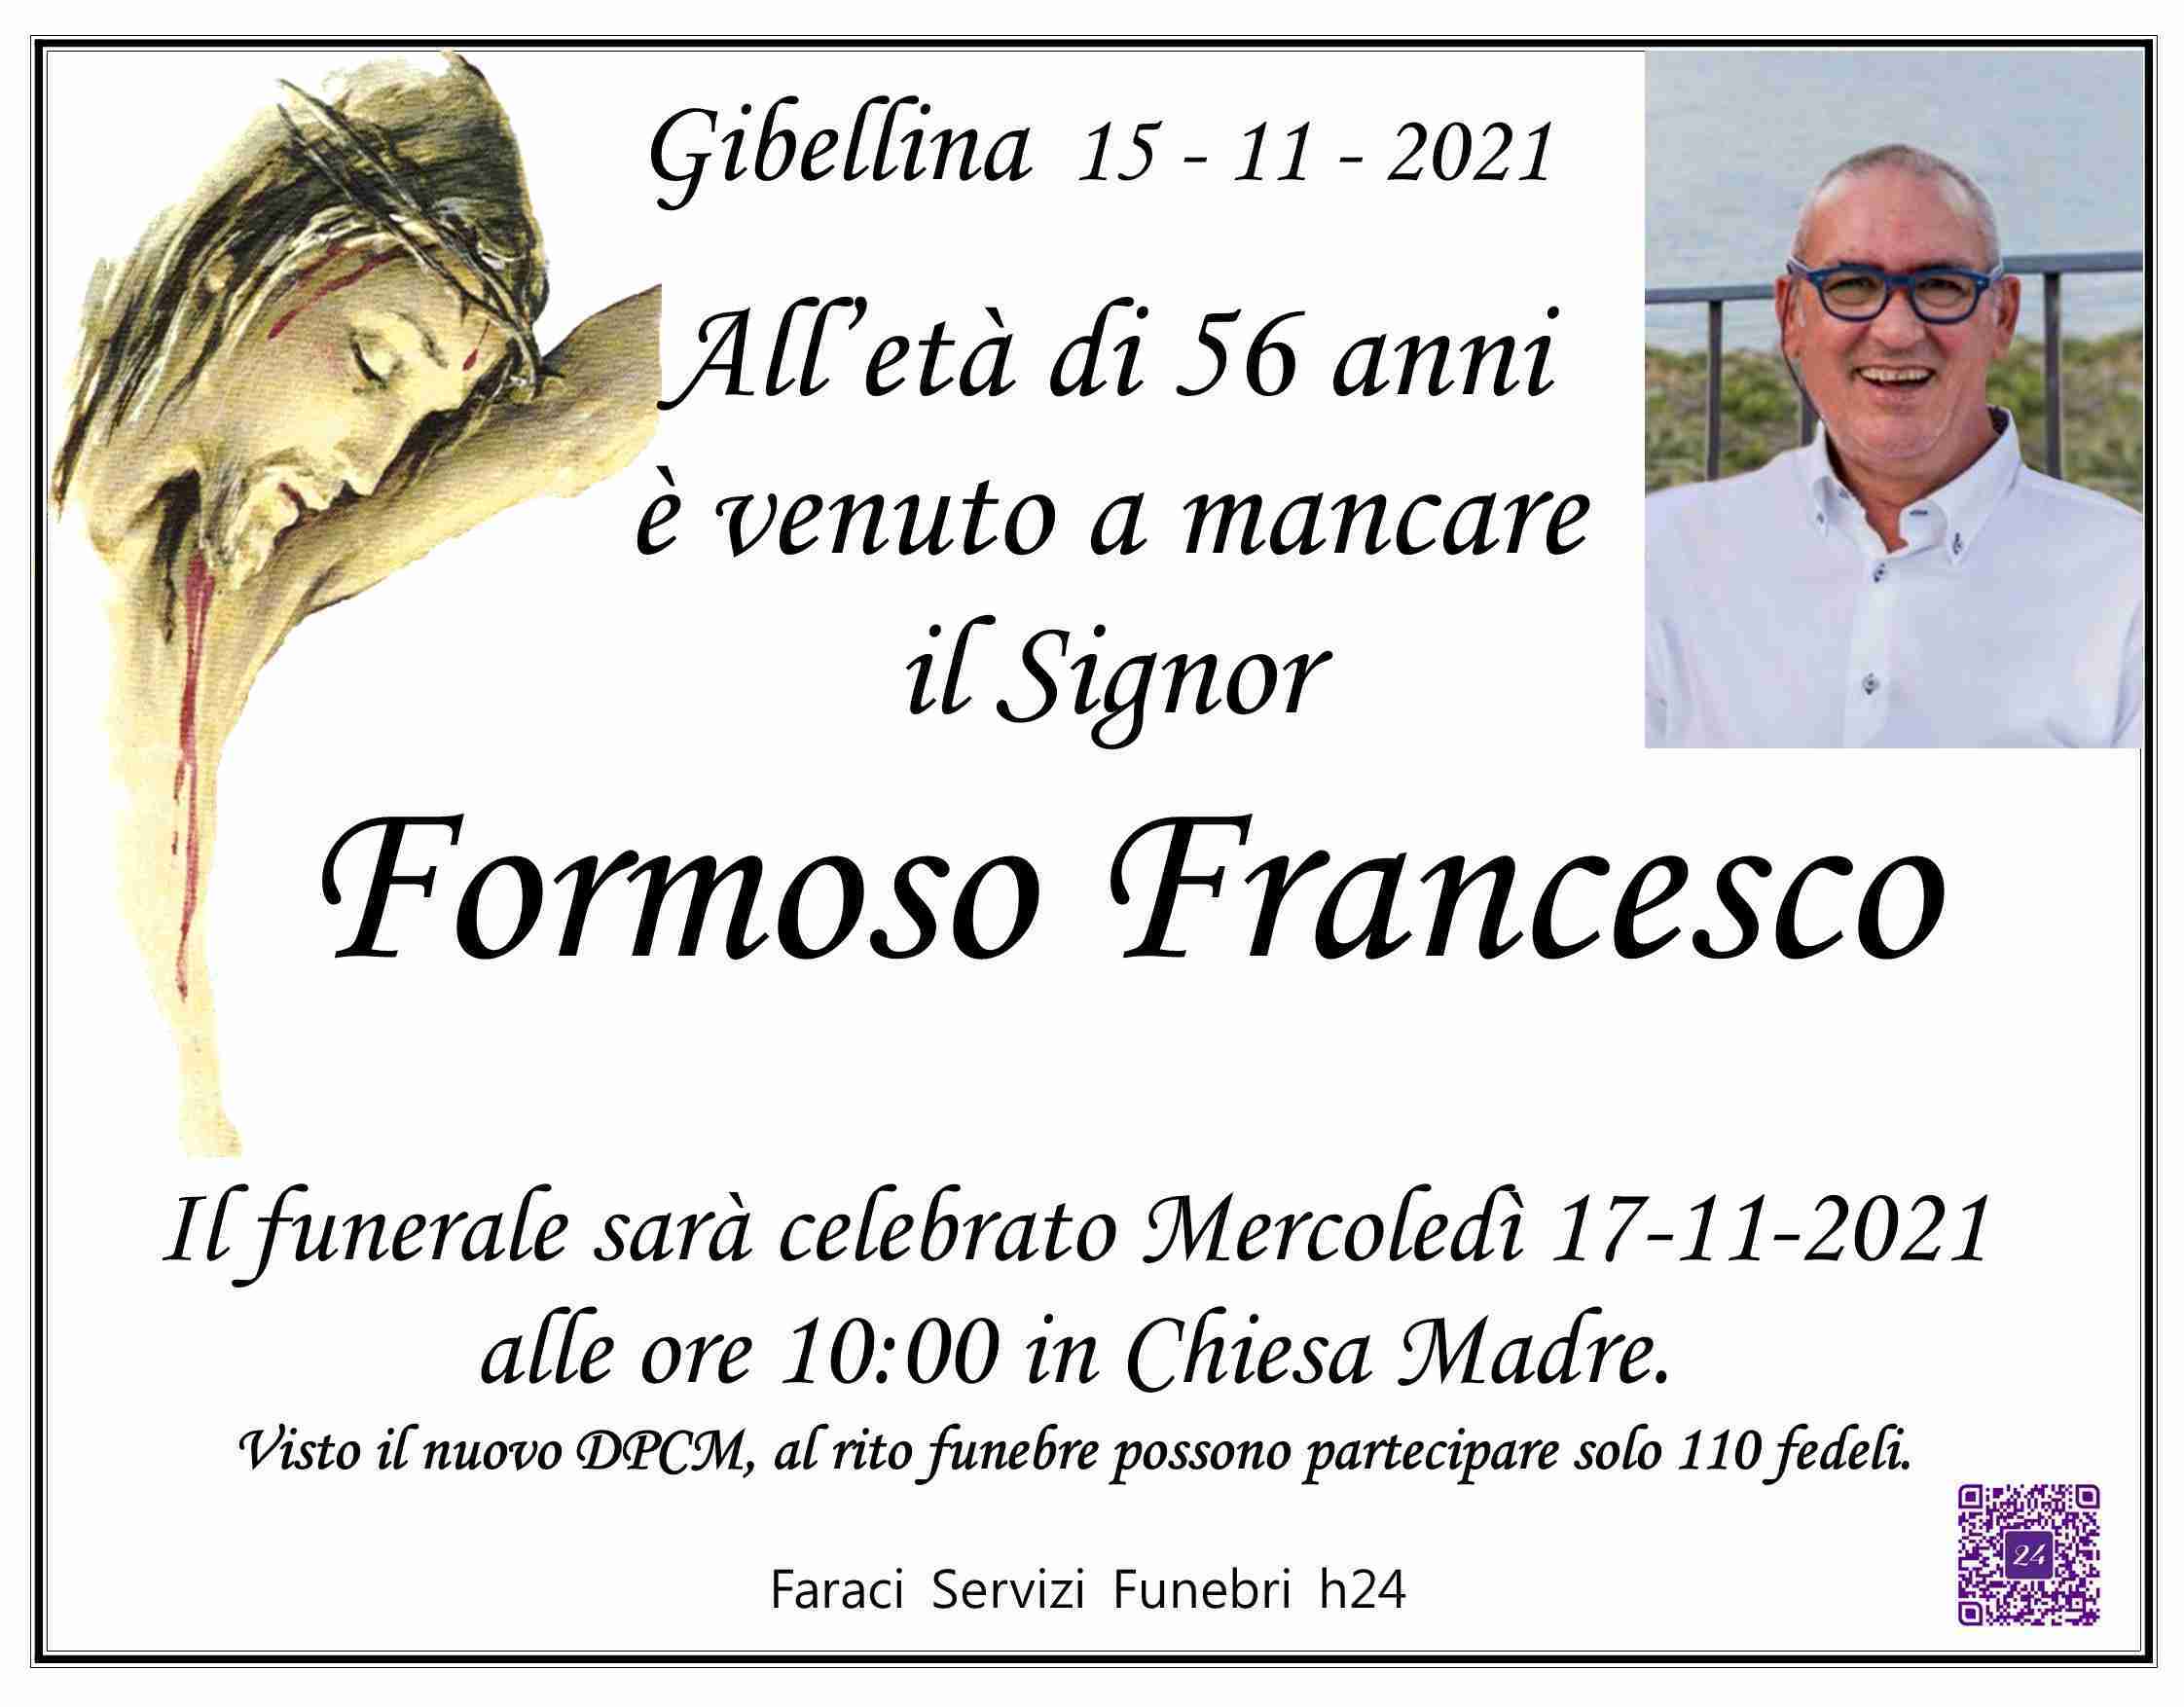 Francesco Formoso